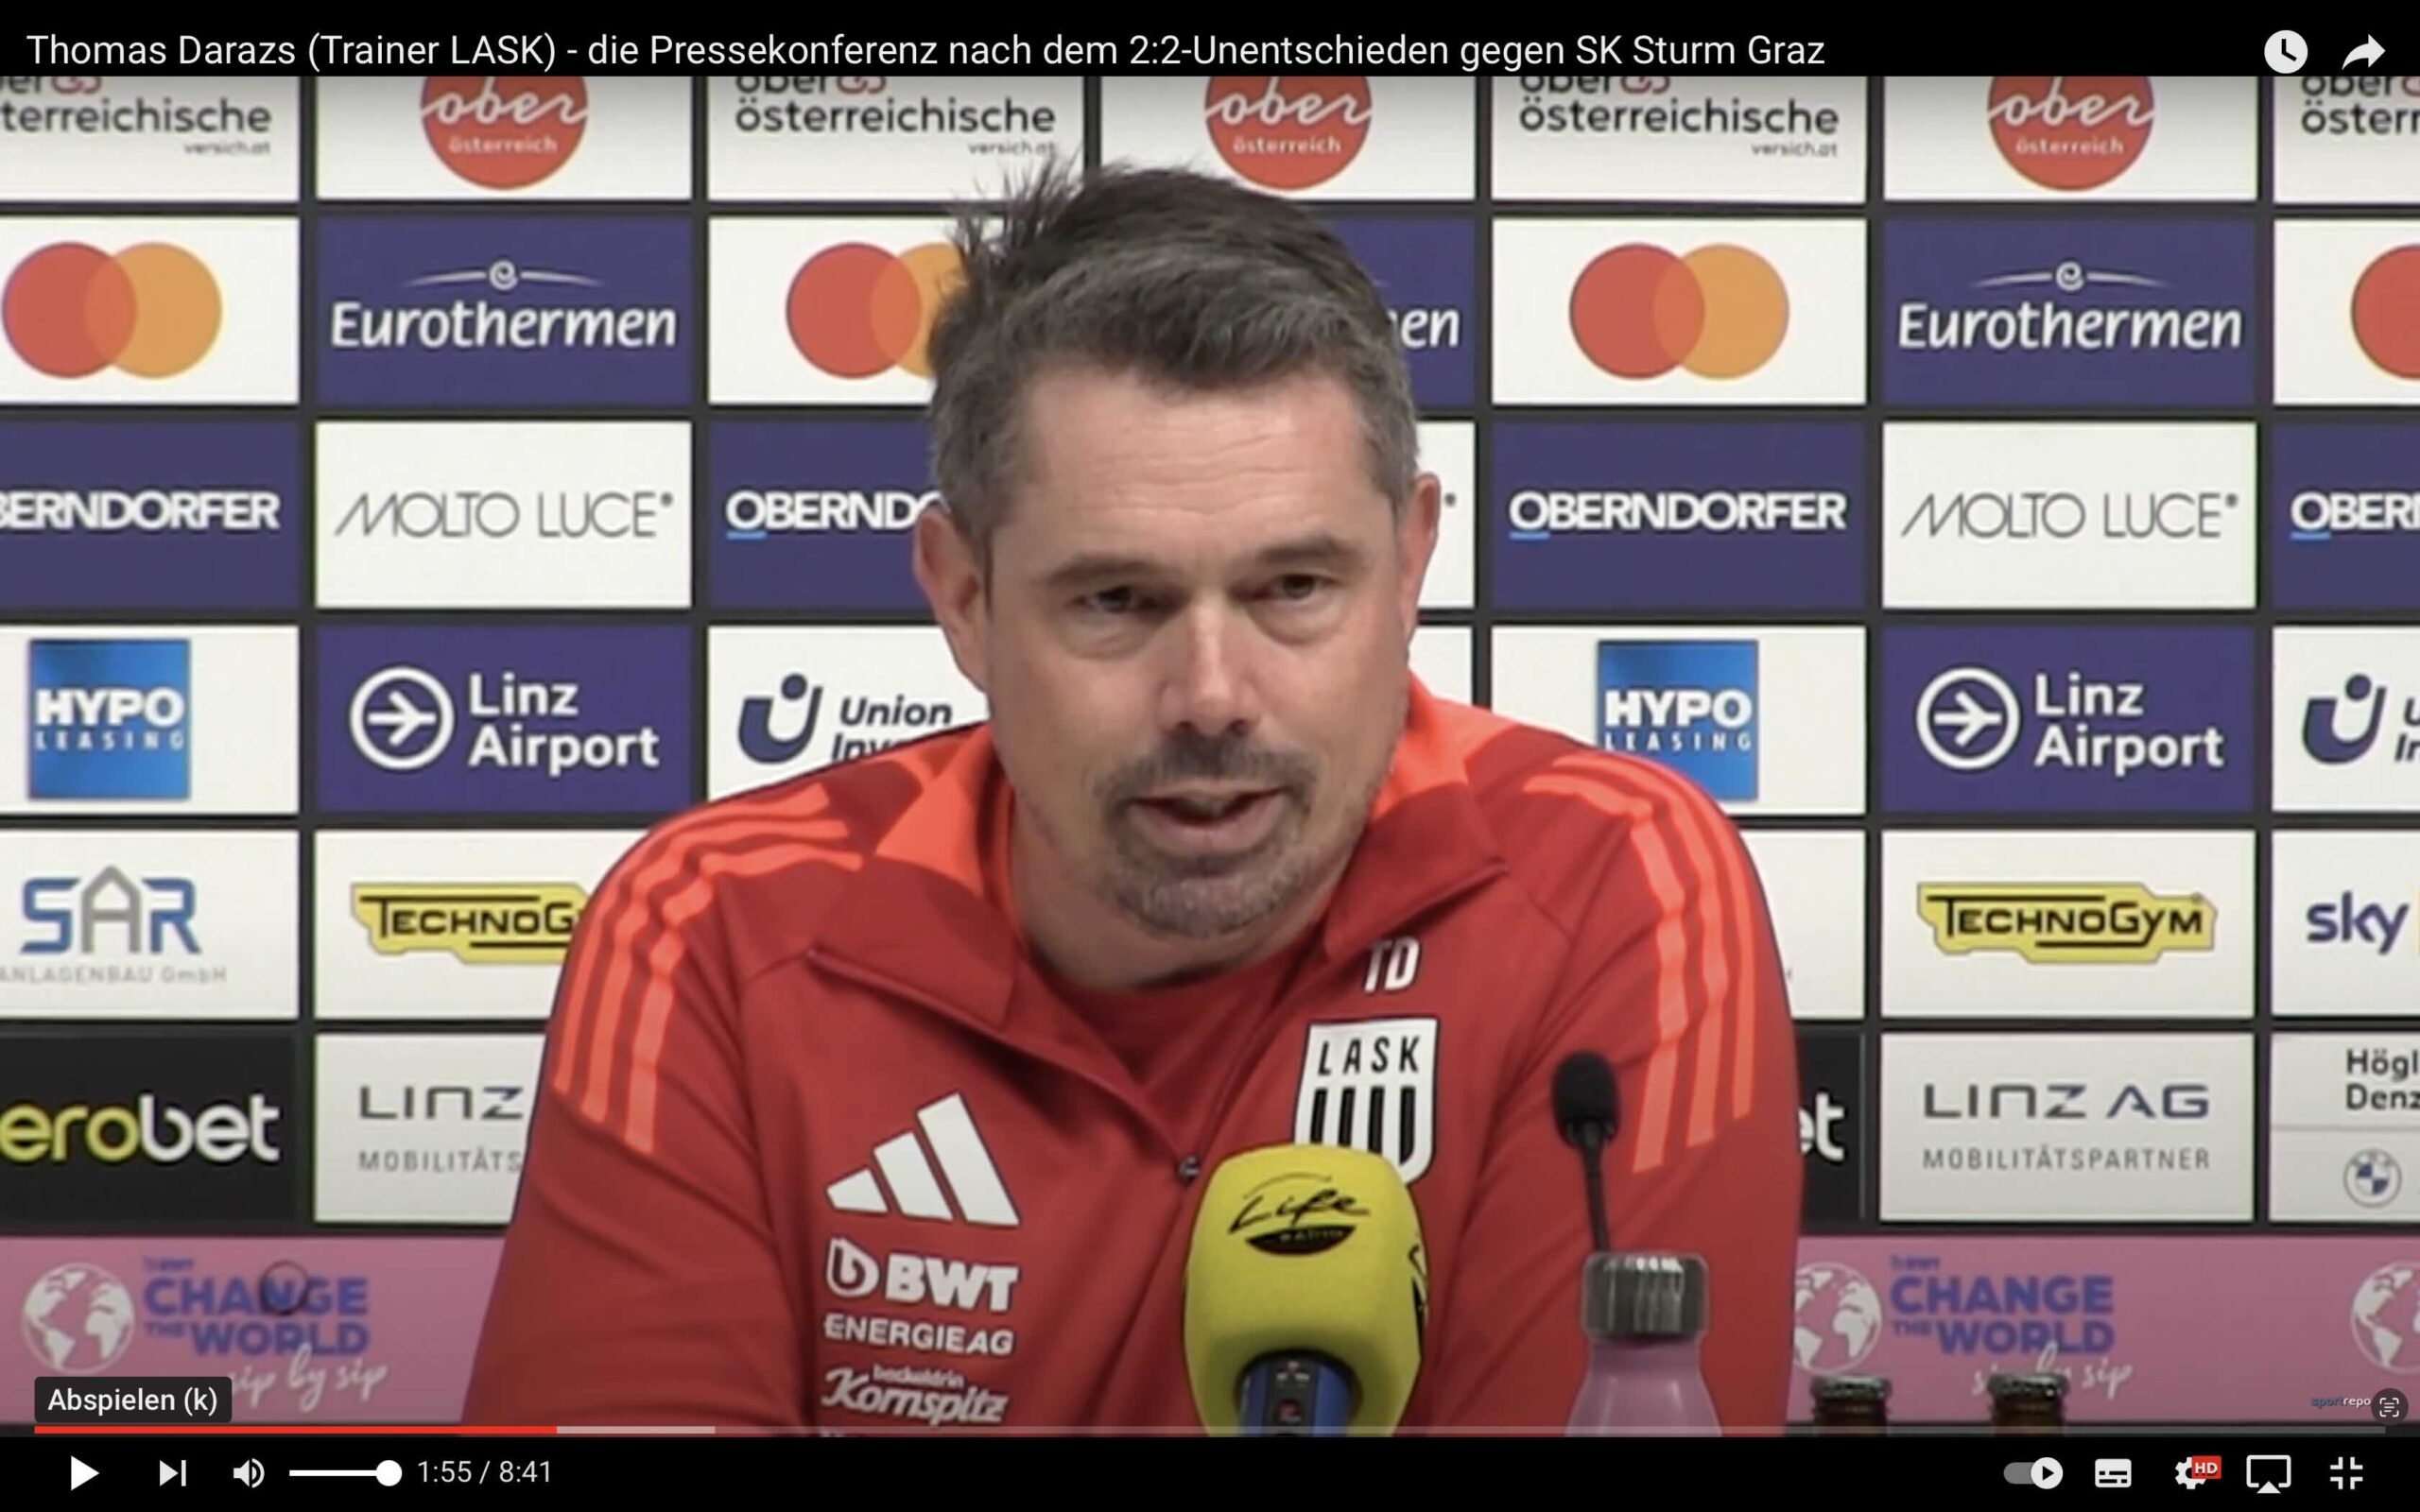 Video: Thomas Darazs (Trainer LASK) - die Pressekonferenz nach dem Spiel gegen SK Sturm Graz